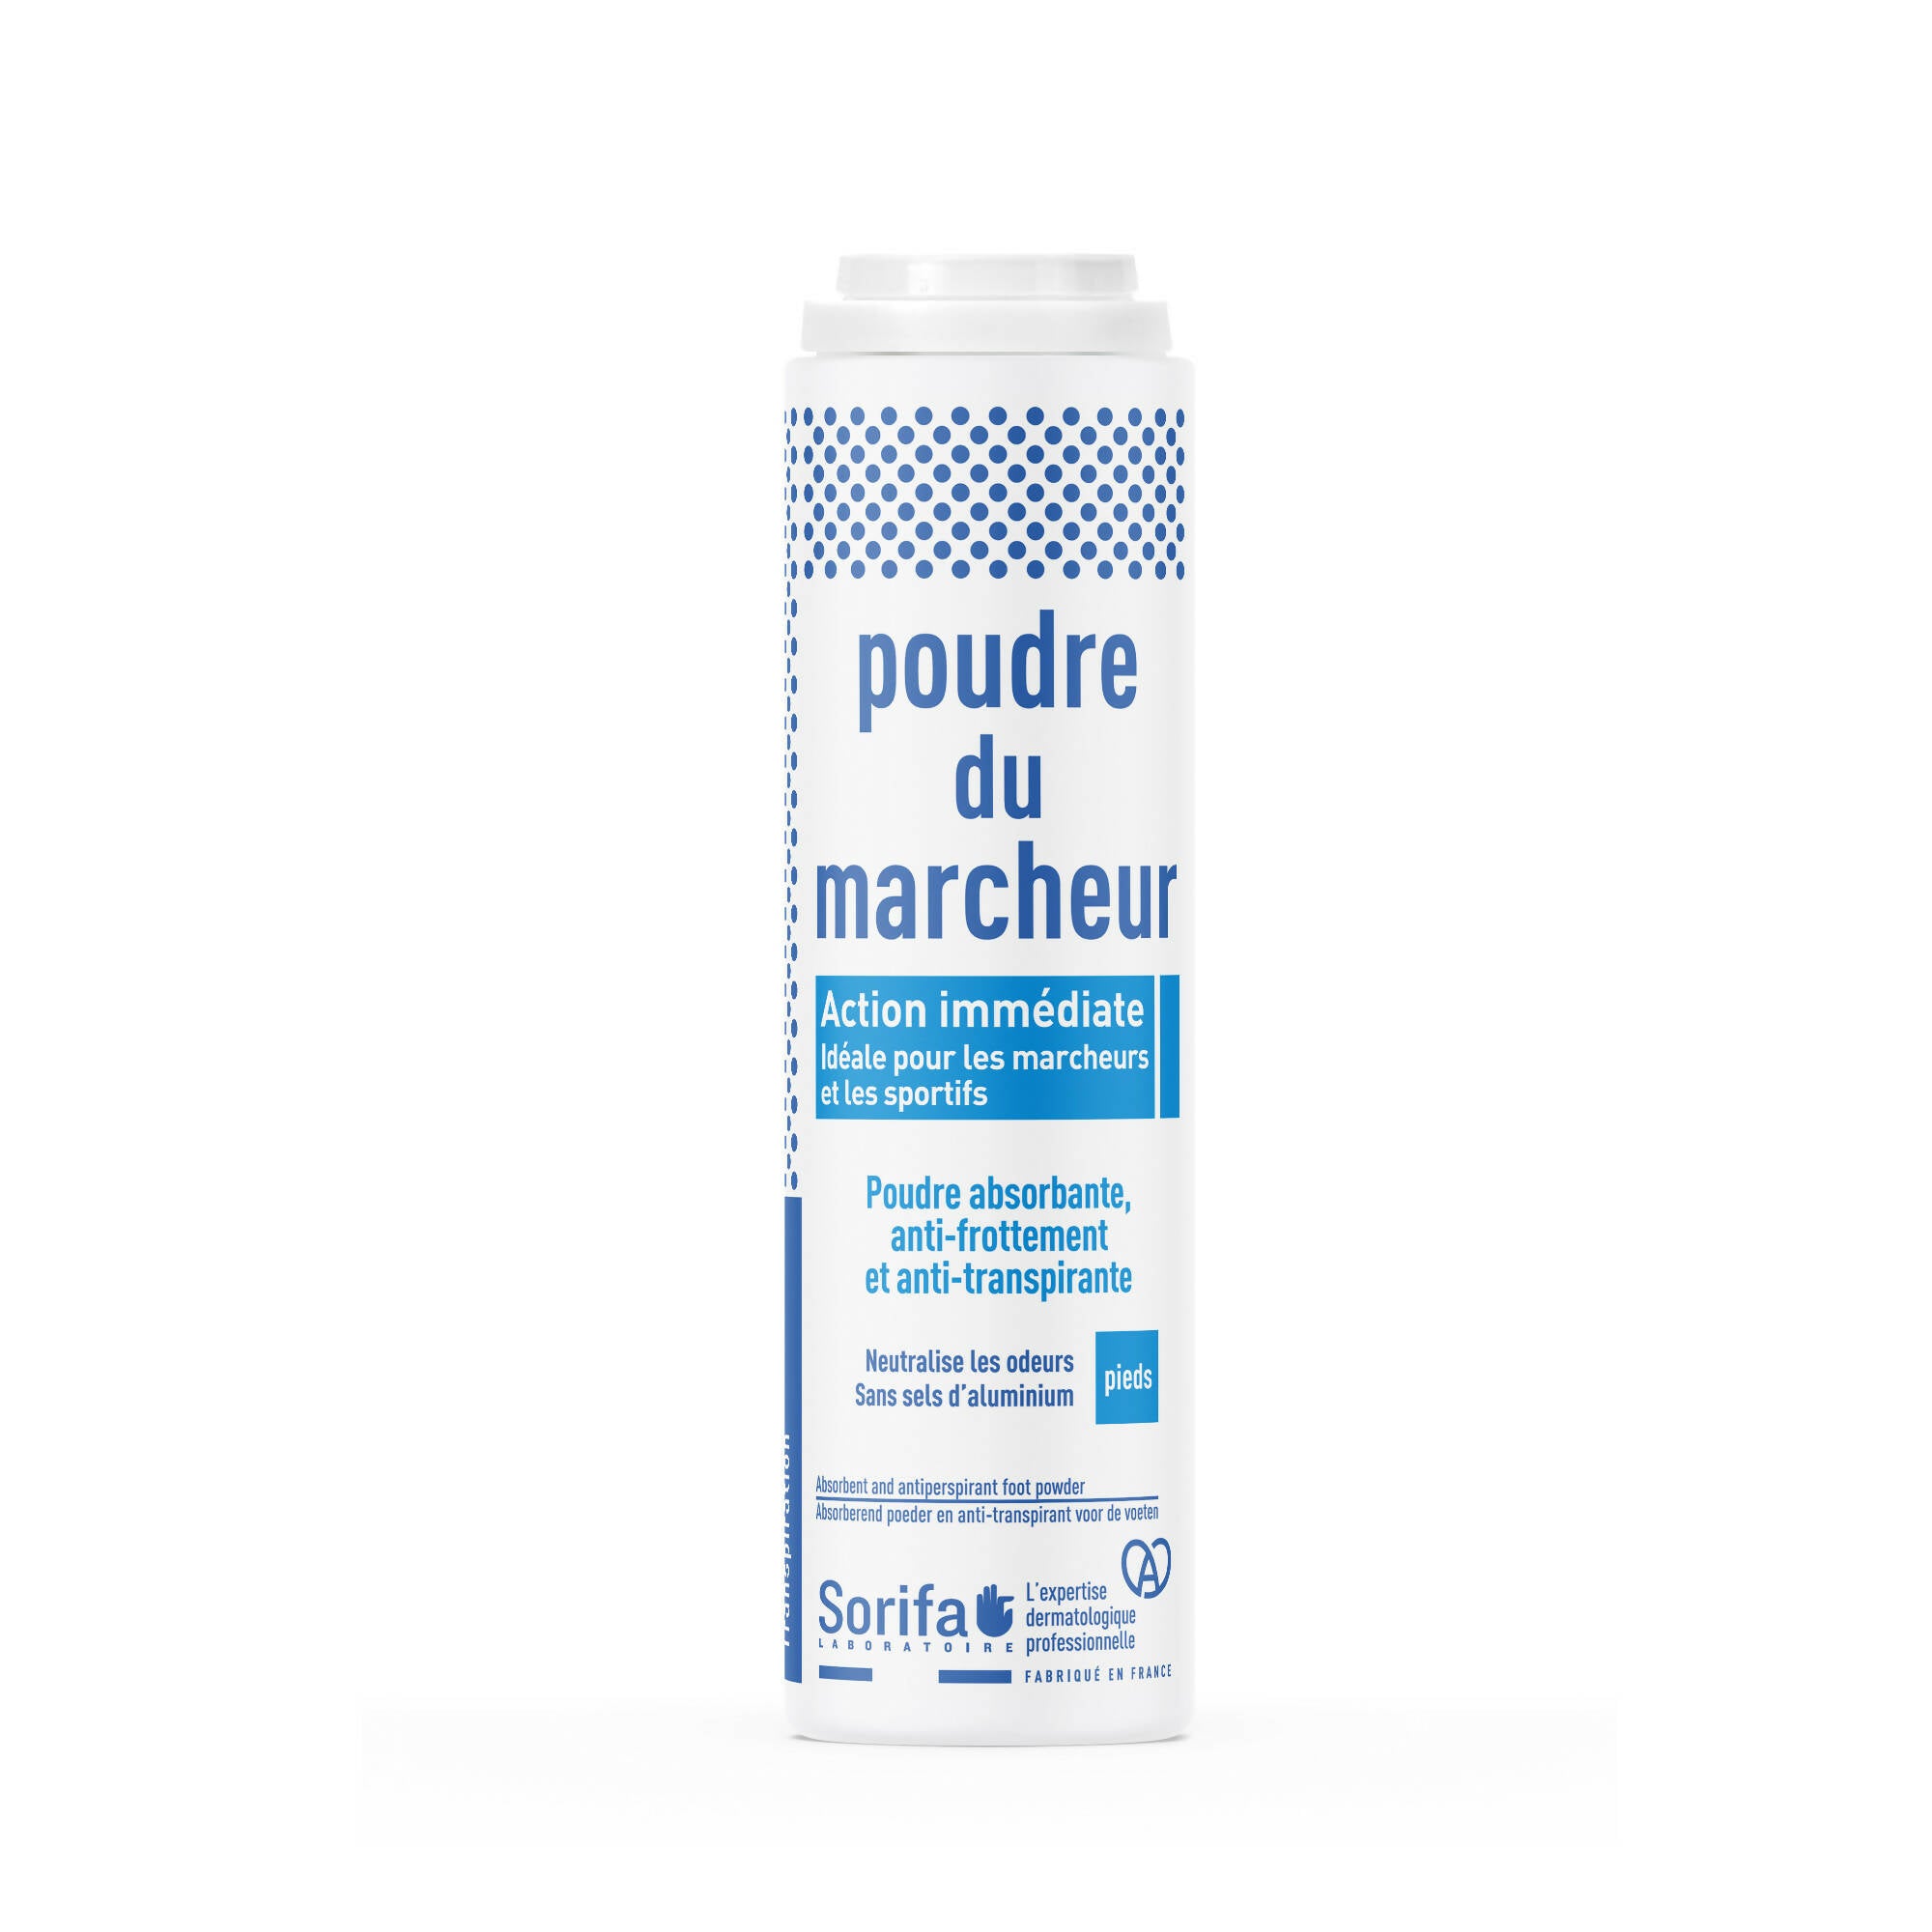 SORIFA - Poudre du Marcheur - Anti-transpirante - Absorbante - Pieds – Réduit la transpiration - Elimine odeurs et mycoses - Sans sels d’aluminium - Fabriqué en France - Poudreuse 100 gr